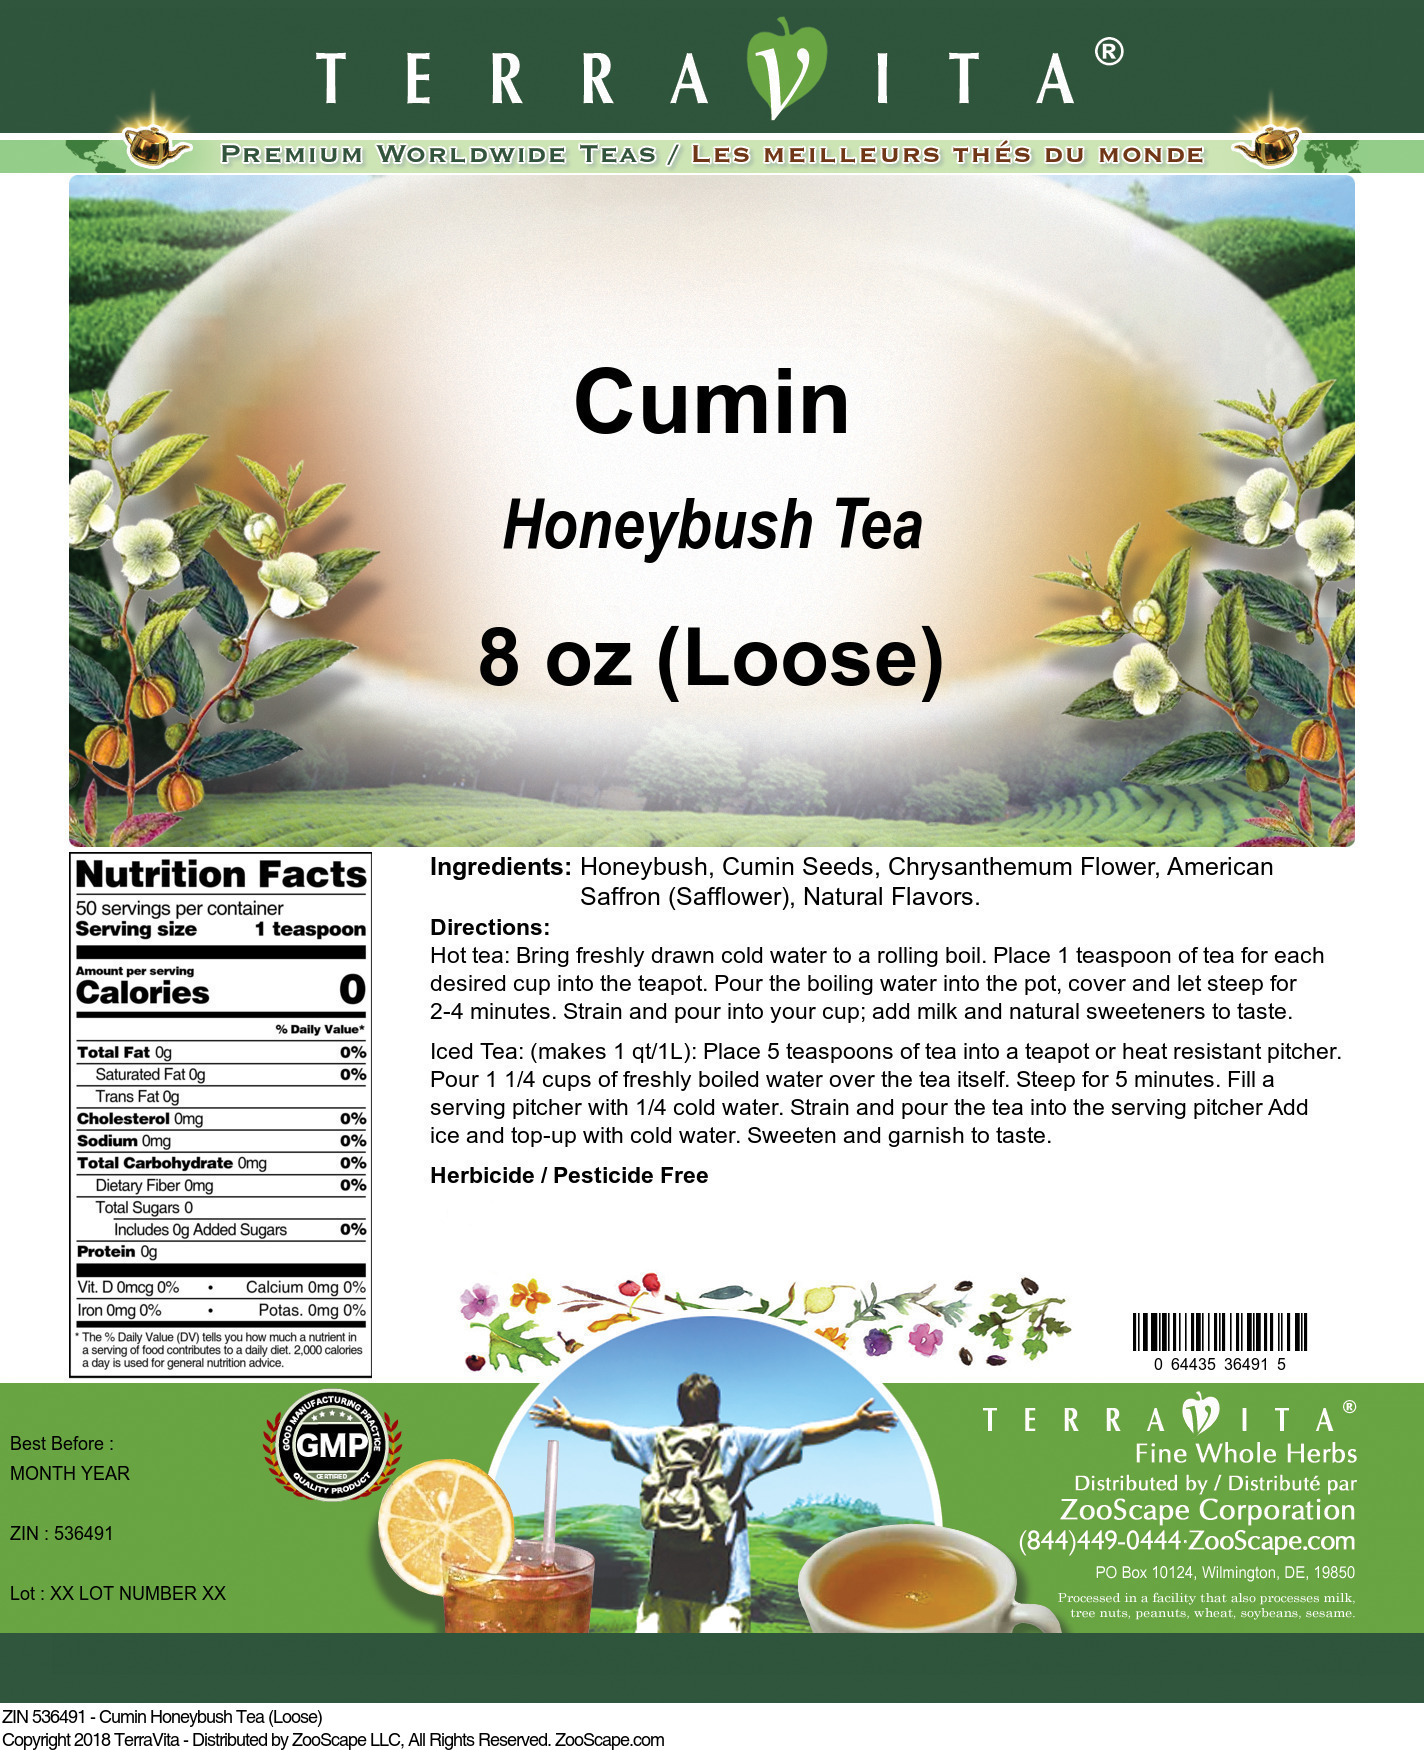 Cumin Honeybush Tea (Loose) - Label